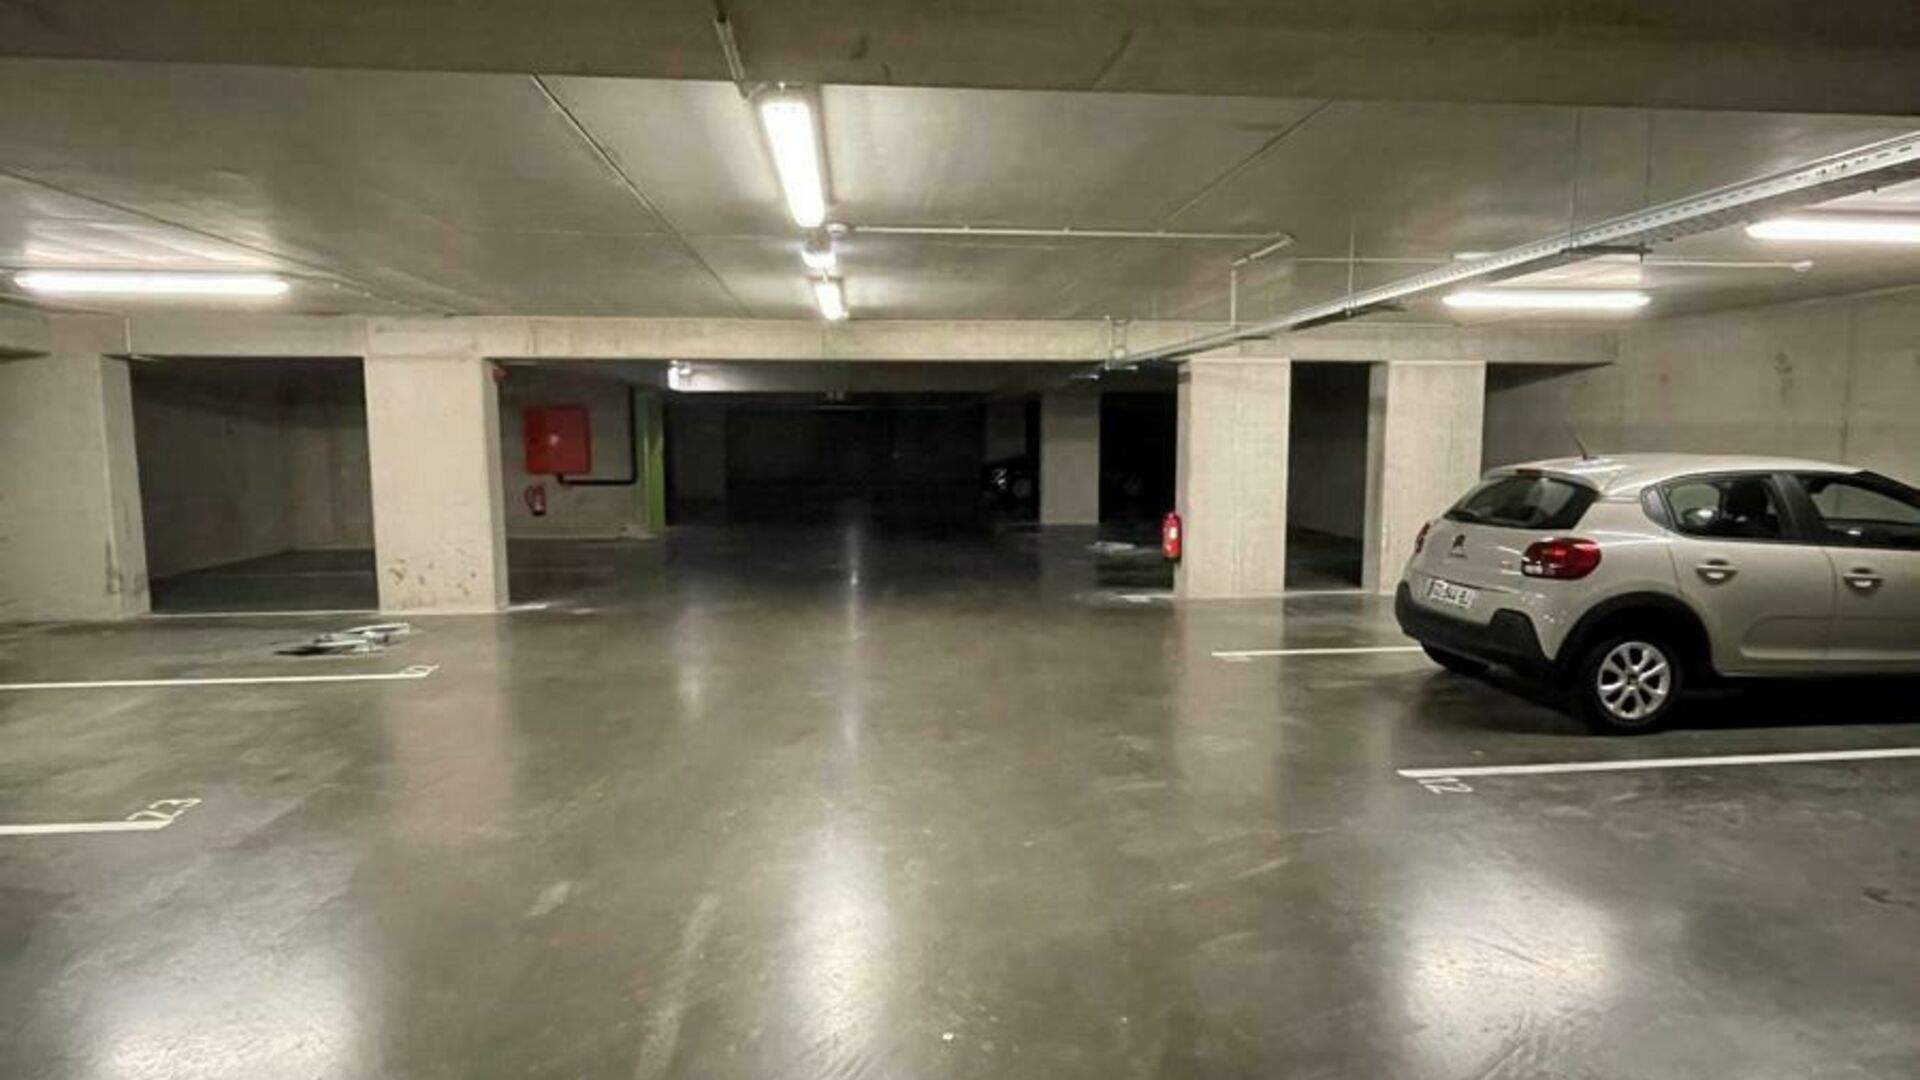 In residentie 'Woods' aan de Tiensesteenweg verhuren wij 3 ondergrondse autostaanplaatsen. De parking is afgesloten en toegankelijk met een automatische poort. Goede verbinding naar Leuven centrum en het station. Parkings zijn onmiddellijk beschikbaar.   